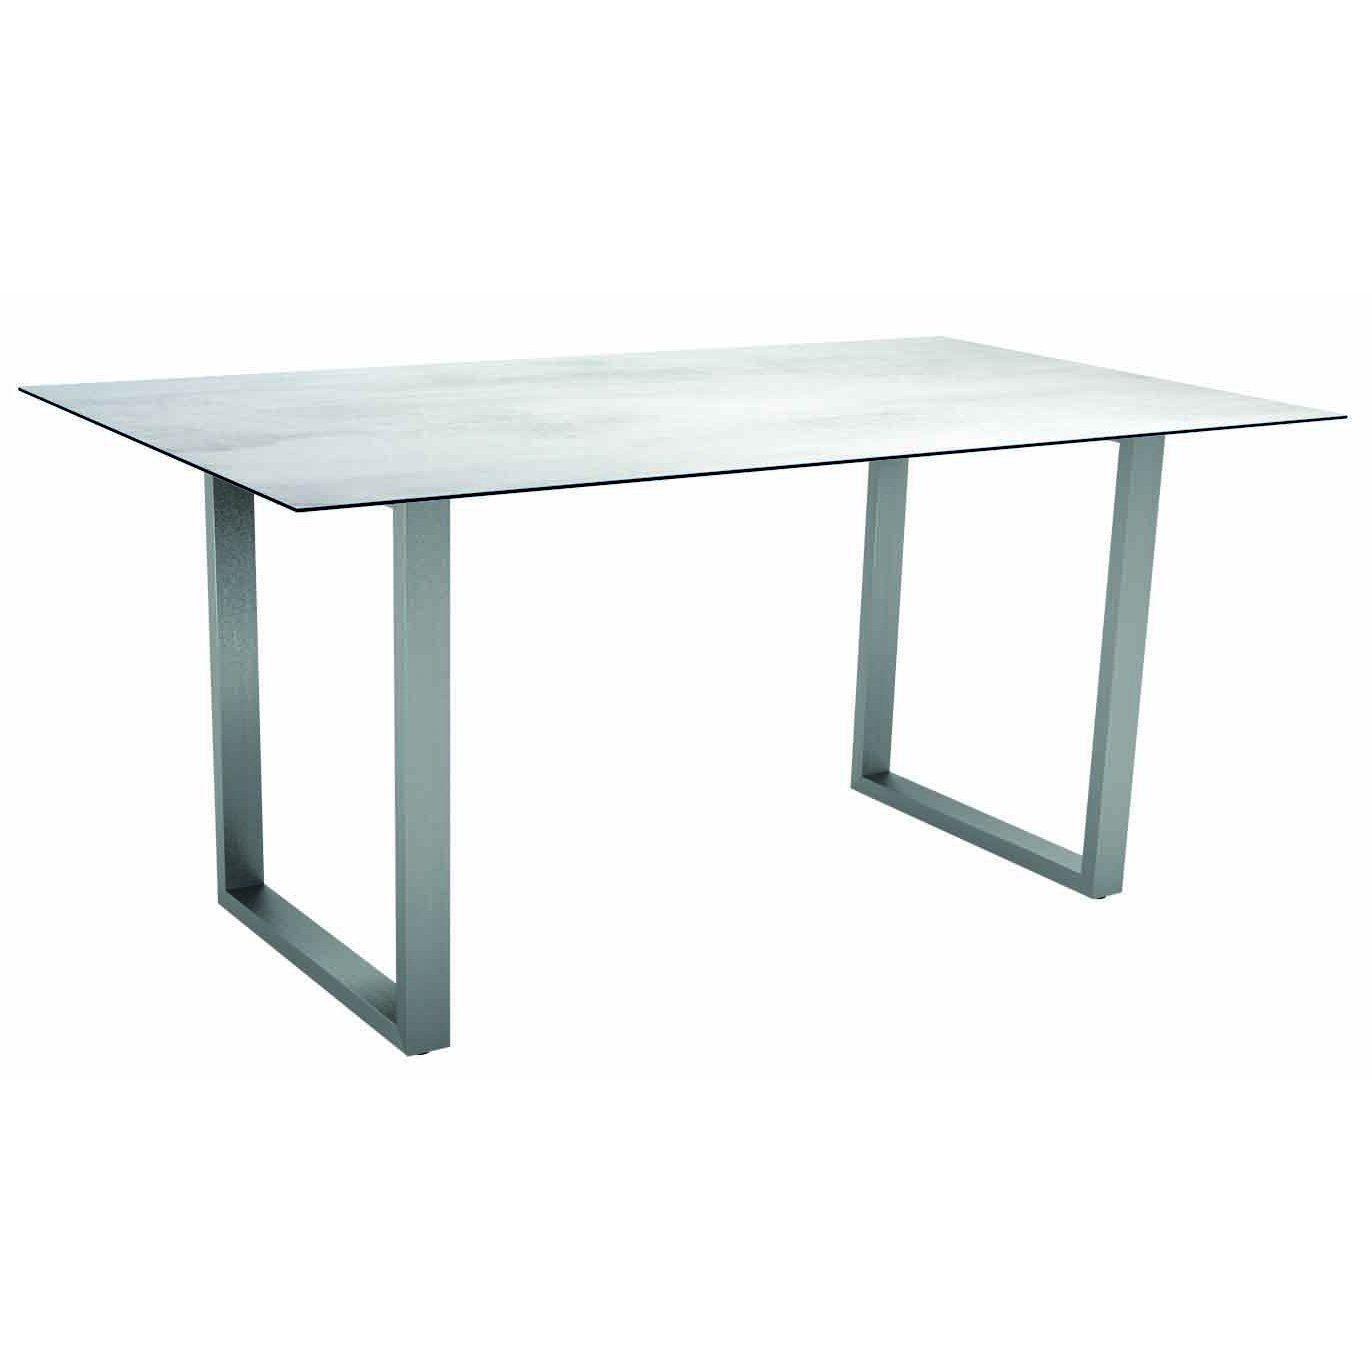 Stern Kufentisch, Gestell Edelstahl, Tischplatte HPL Zement hell, Tischgröße: 160x90 cm